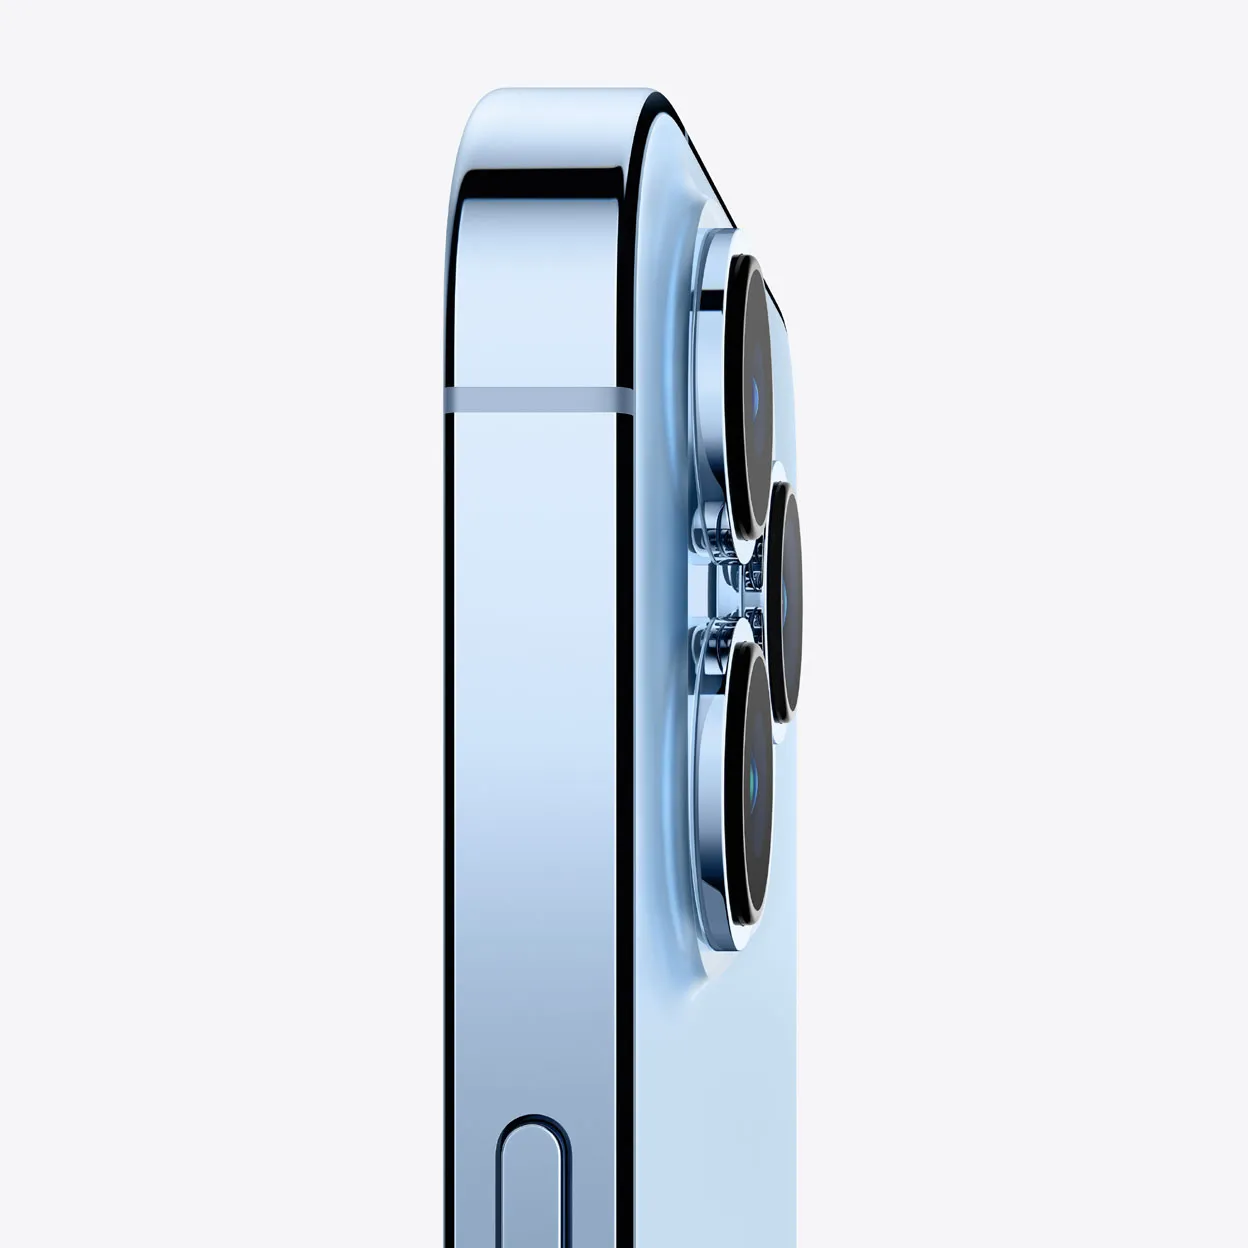 Apple iPhone 13 Pro (1TB) – Sierra Blue